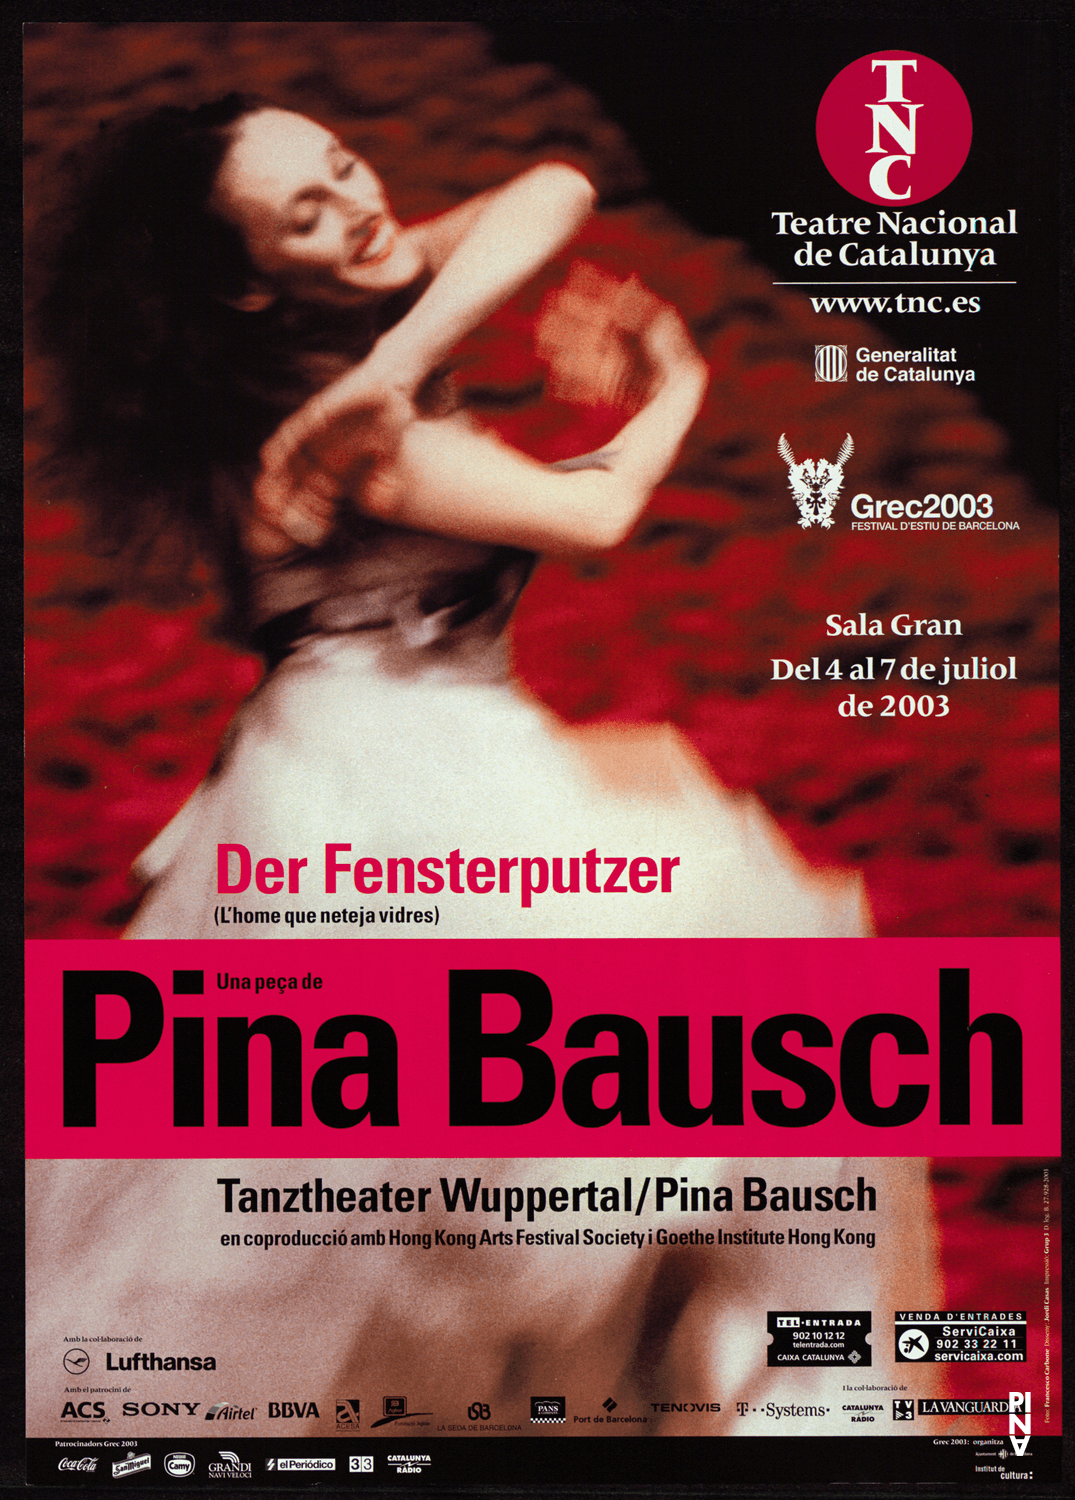 Poster for “Der Fensterputzer (The Window Washer)” by Pina Bausch in Barcelona, 07/04/2003 – 07/07/2003